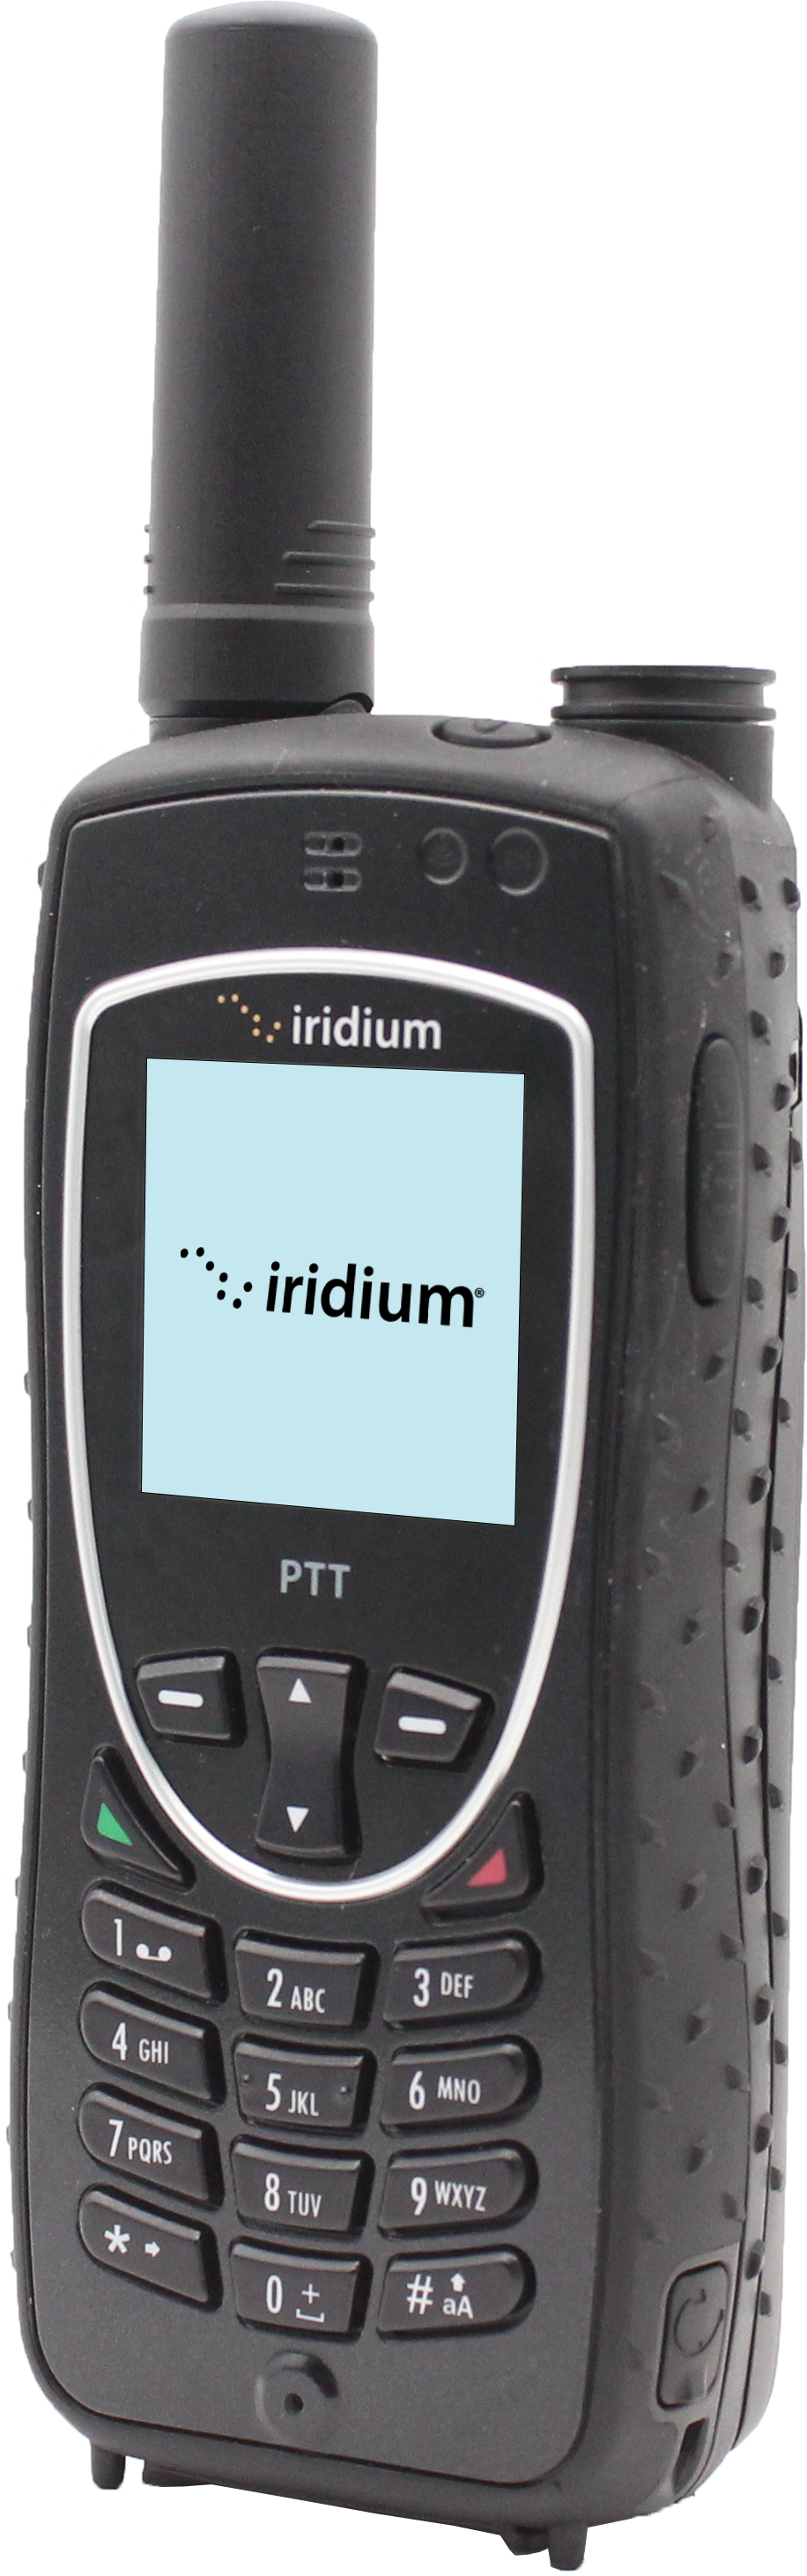 Iridium Extreme PTT Product Image